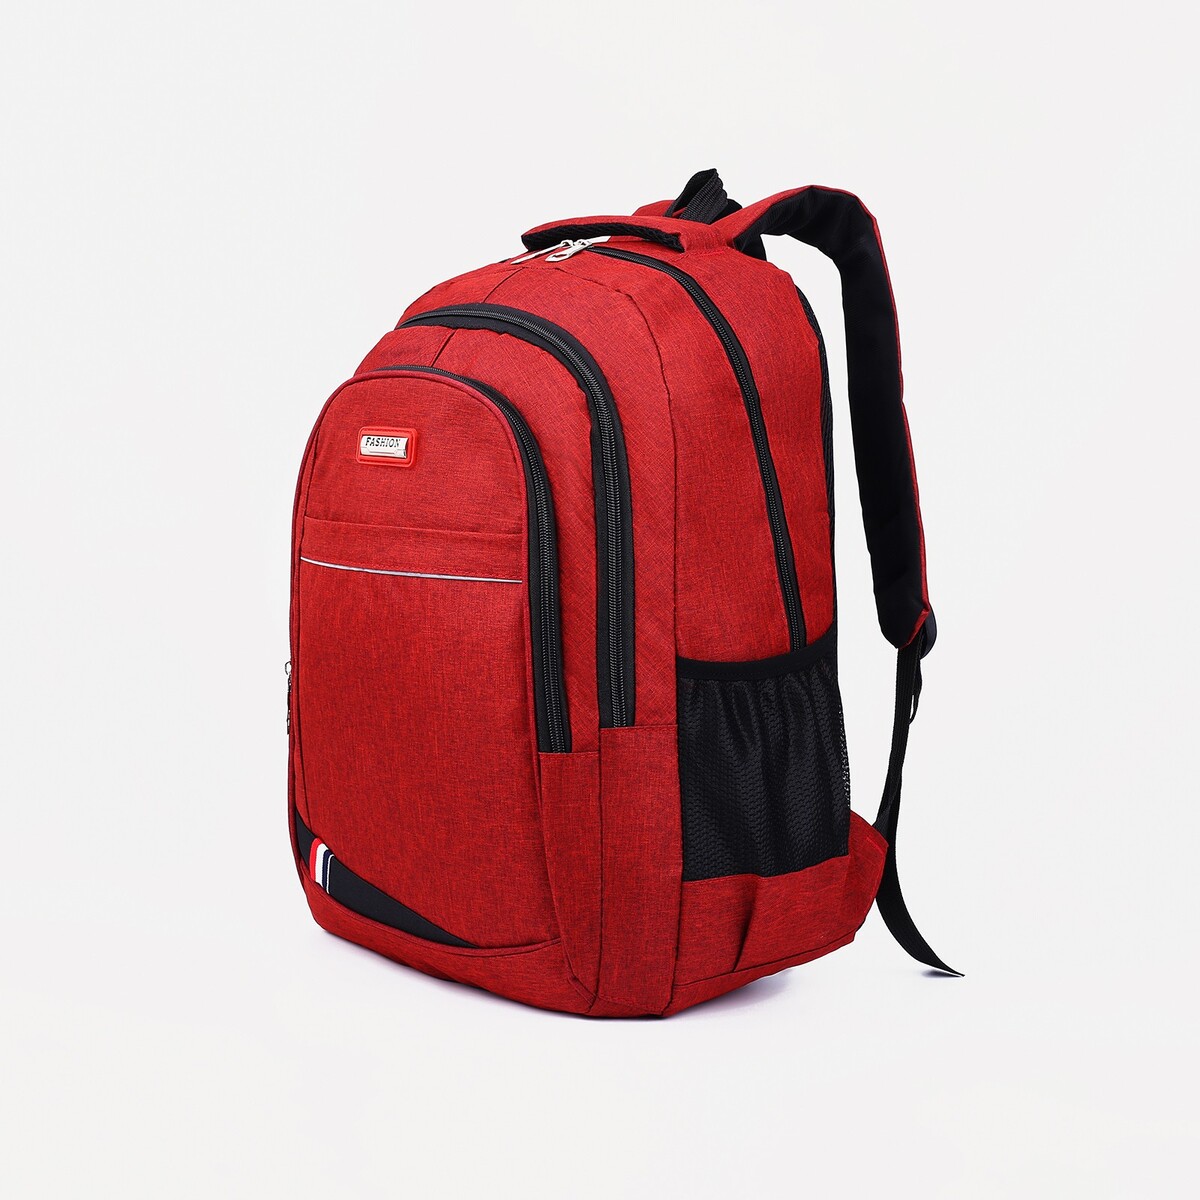 Рюкзак на молнии, 2 наружных кармана, цвет бордовый рюкзак классики 28 11 38 см 1 отд на молнии 4 н кармана бордовый